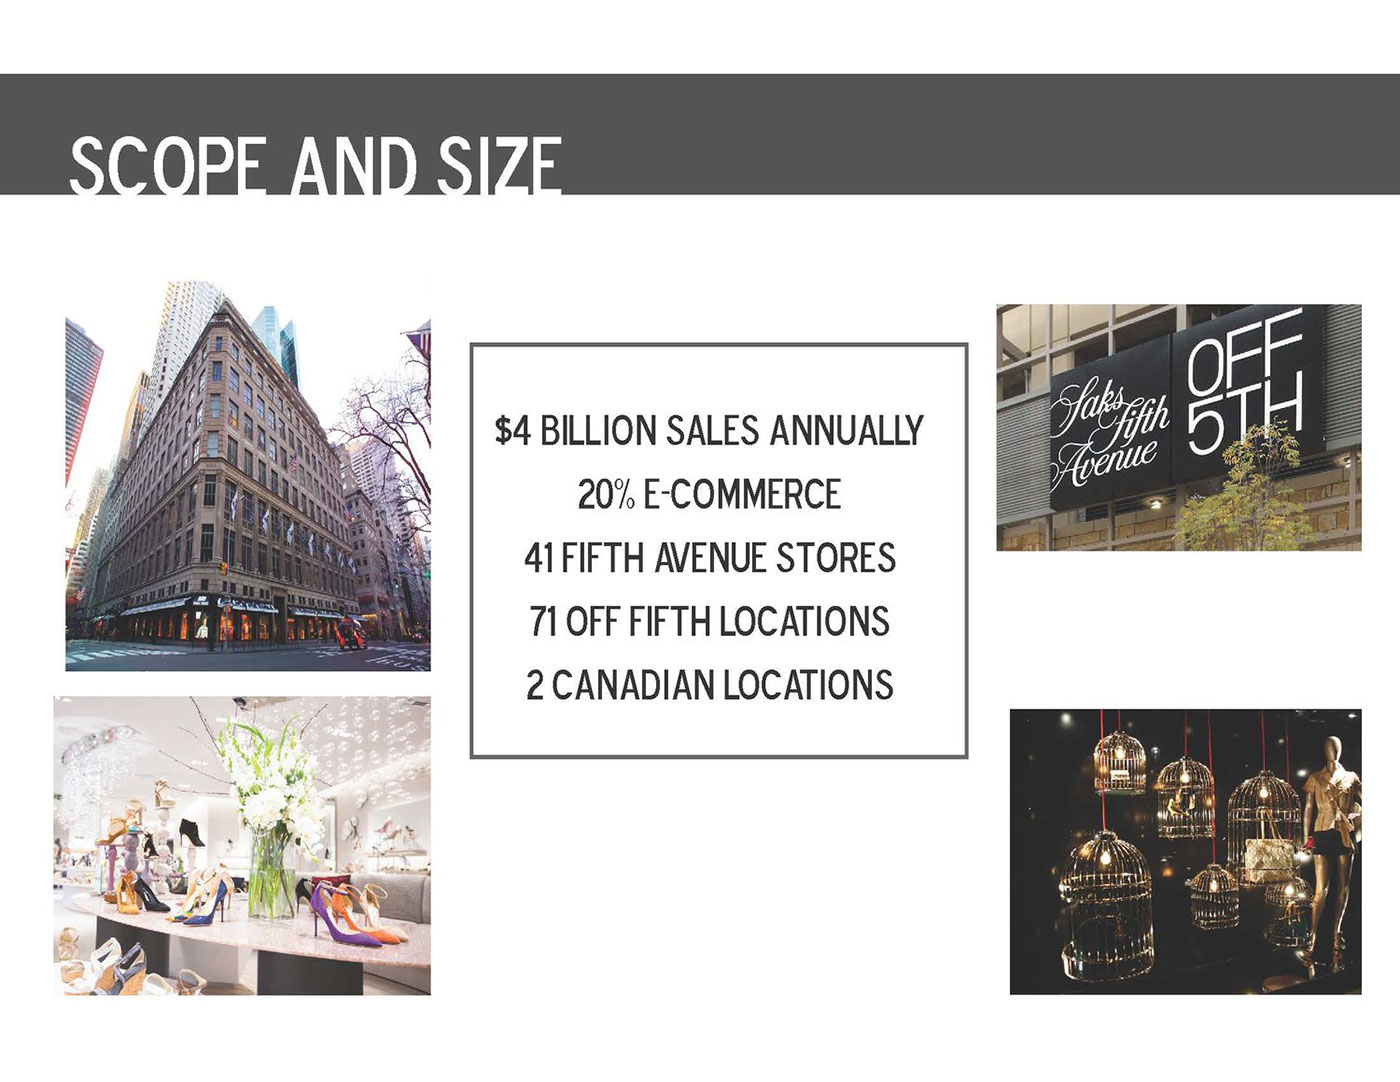 retail buying plan Buying Retail saks Saks Fifth Avenue men's trends Fashion  fashion marketing student SCAD